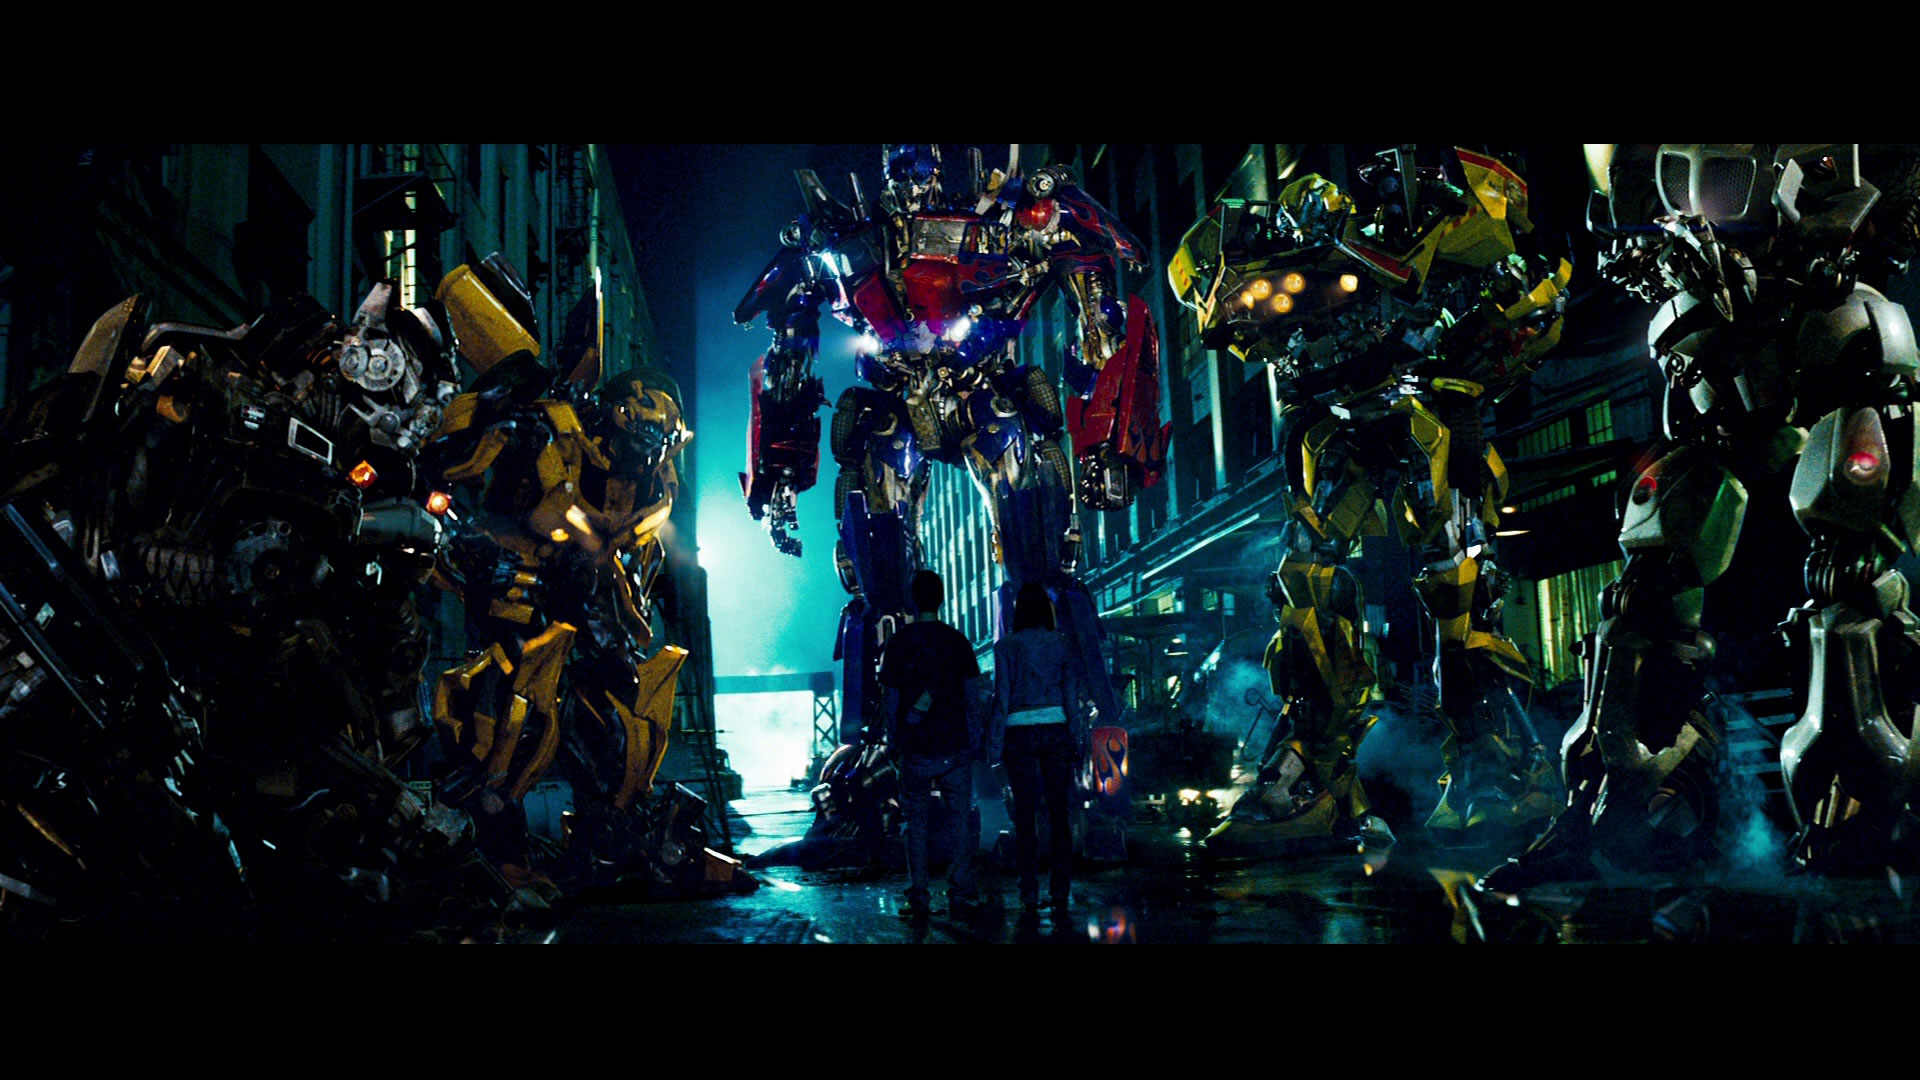 [49+] Transformers 4 Wallpaper HD 1080p on WallpaperSafari